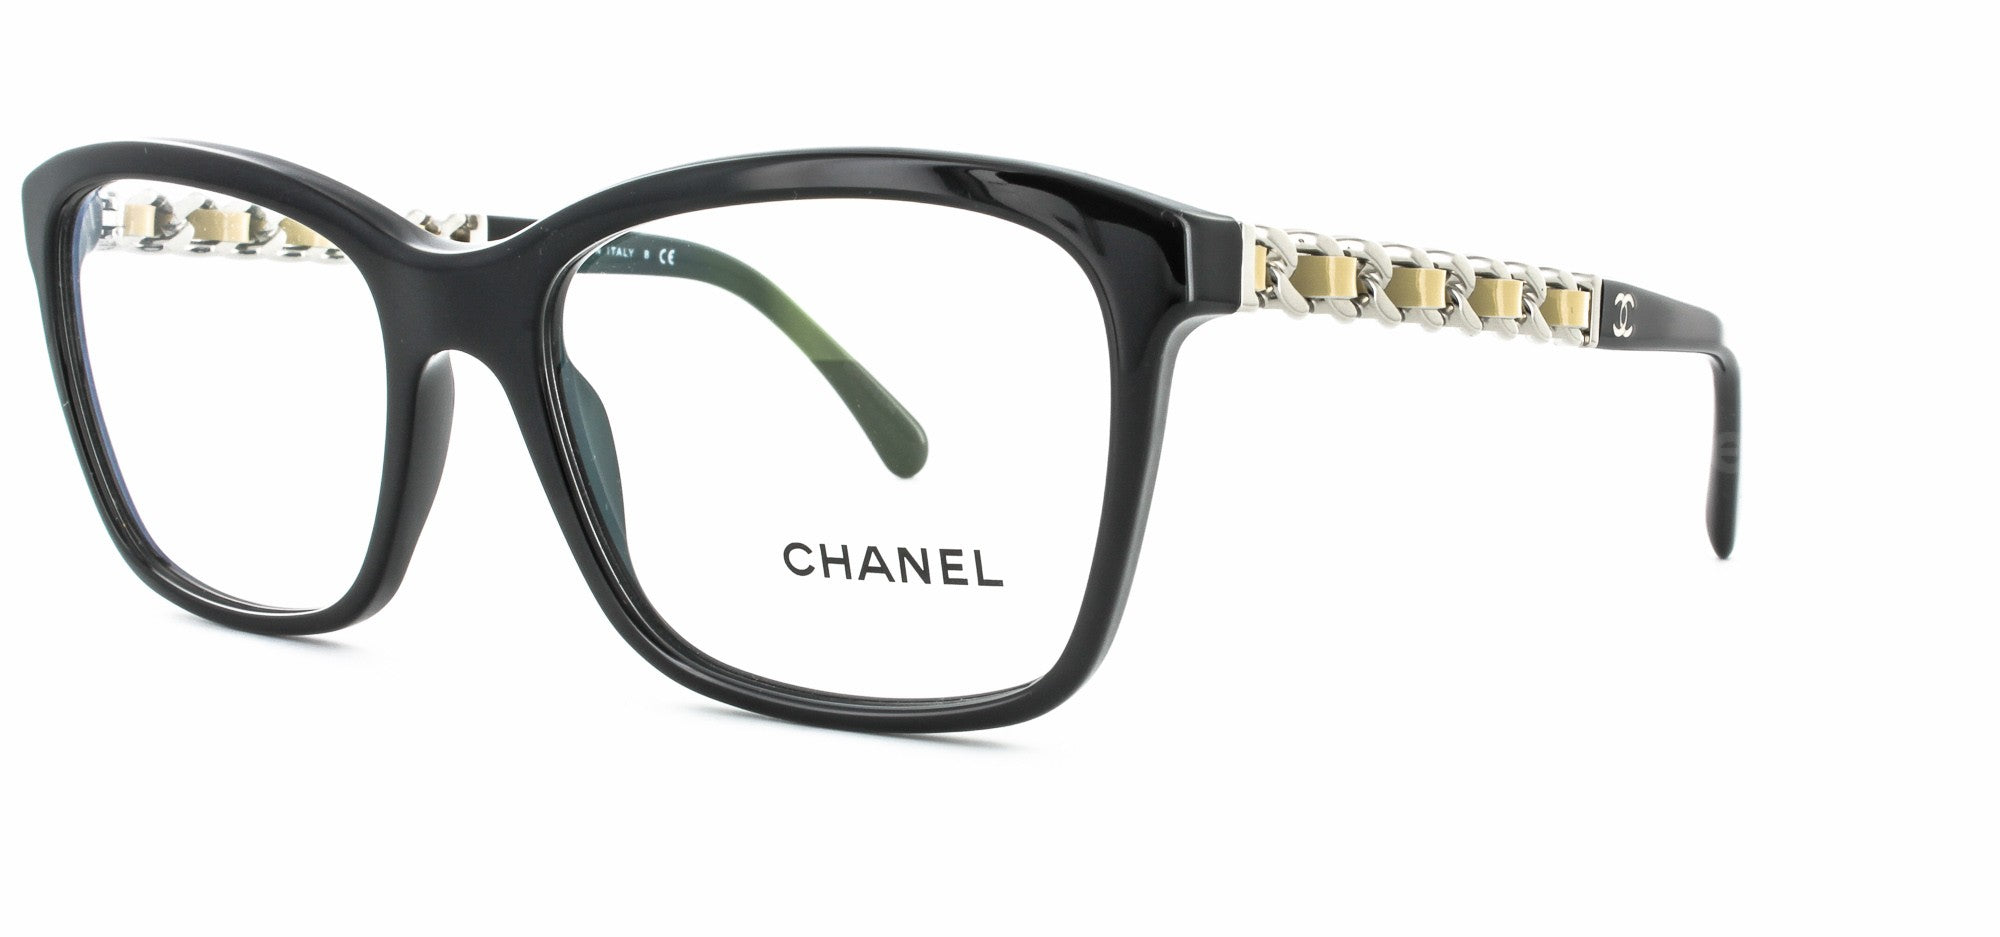 CHANEL Round Sunglasses  Round sunglasses, Sunglasses, Chanel